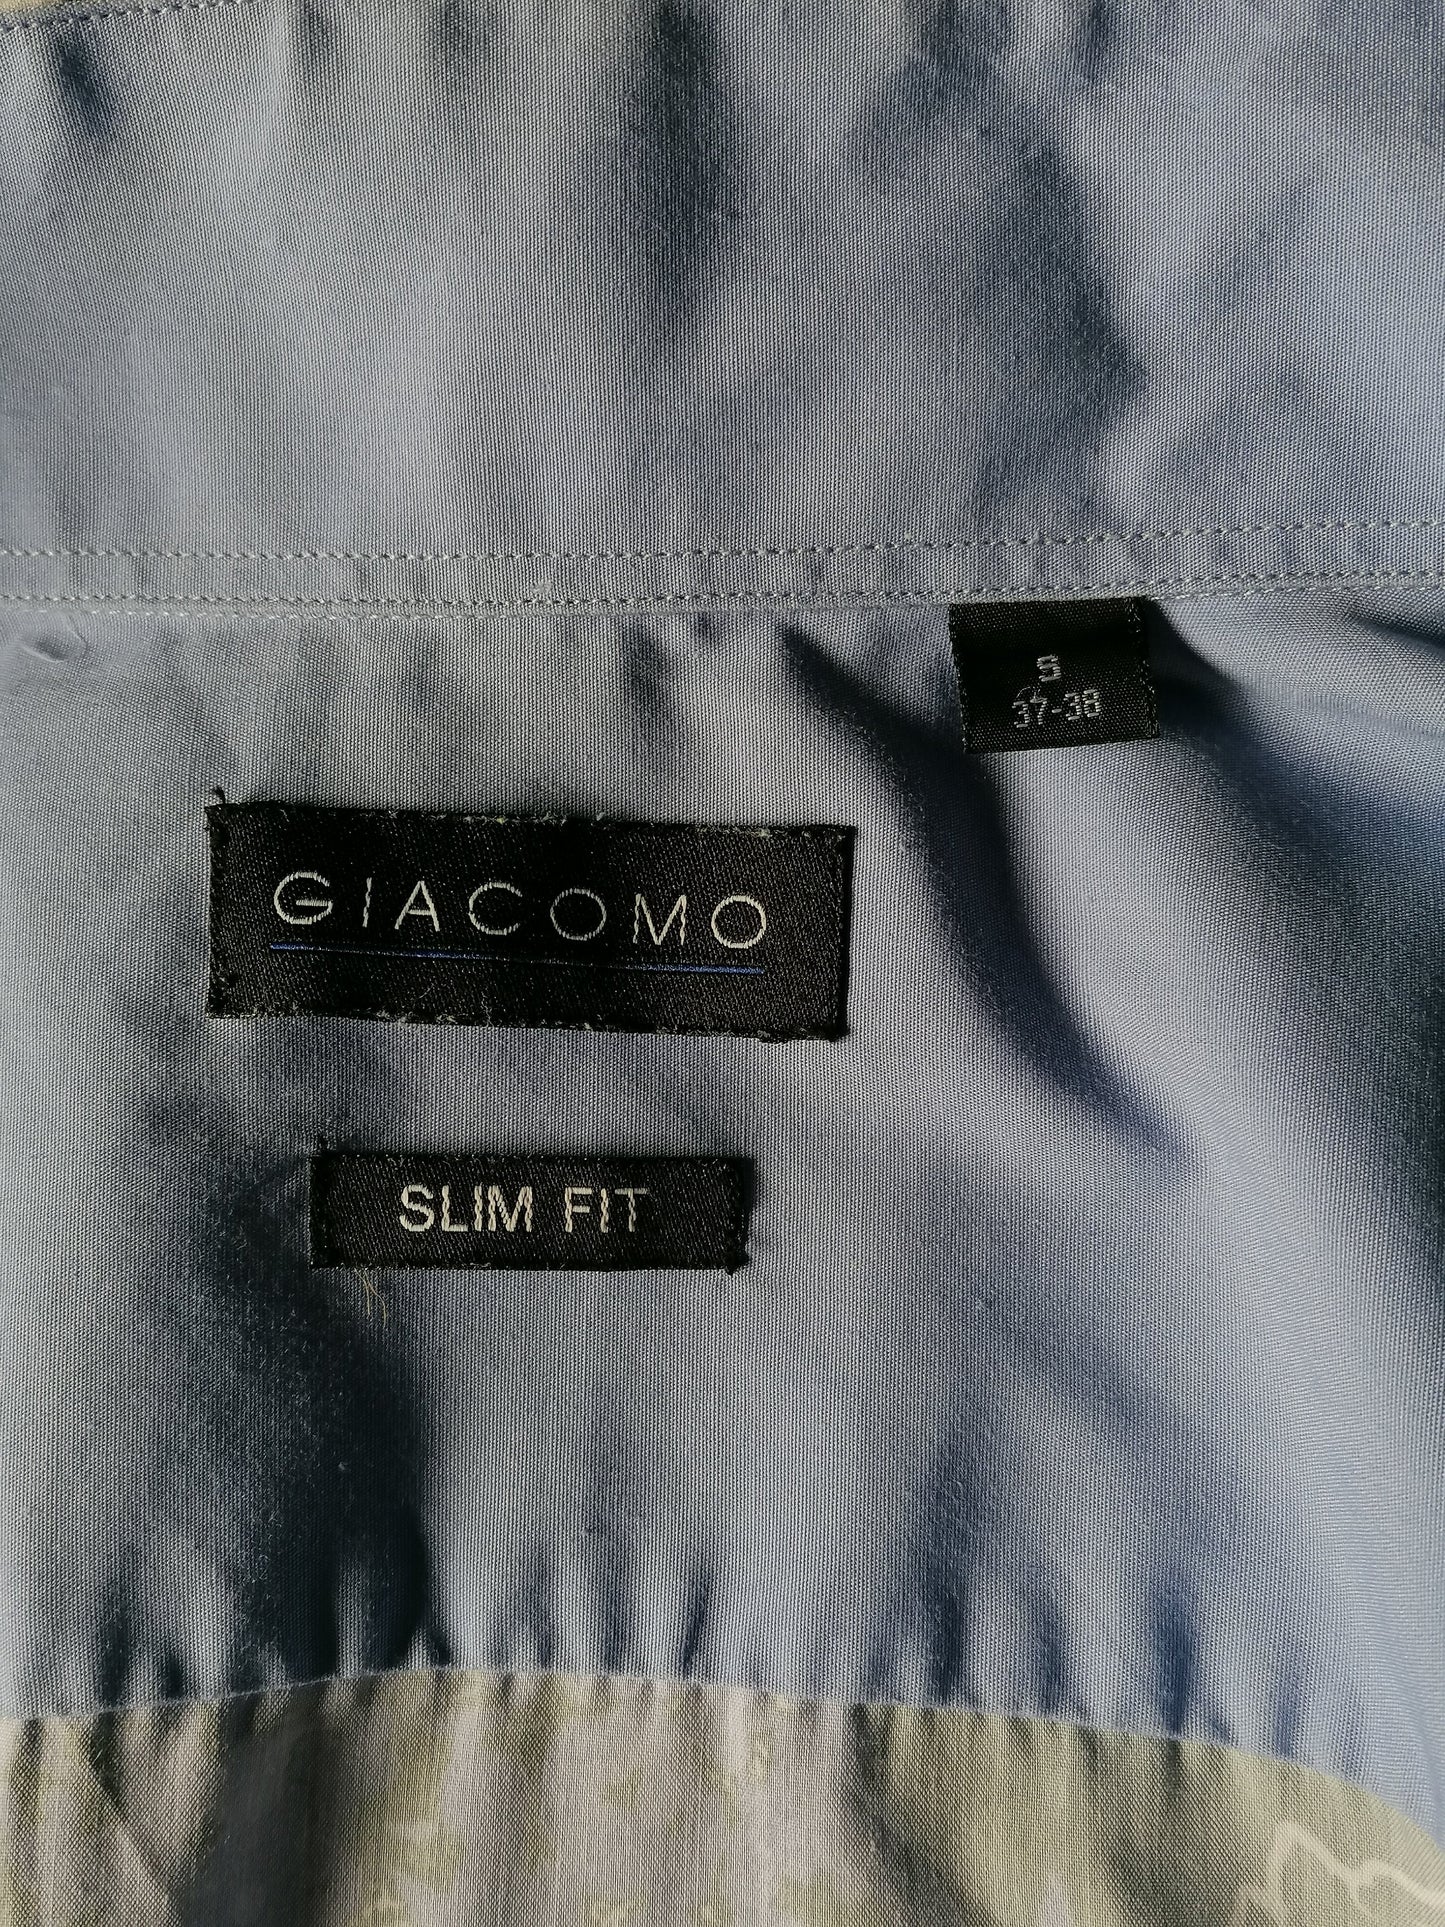 Giacomo print overhemd. Blauw Grijs Zwart gebloemd. Maat S. Slim Fit.